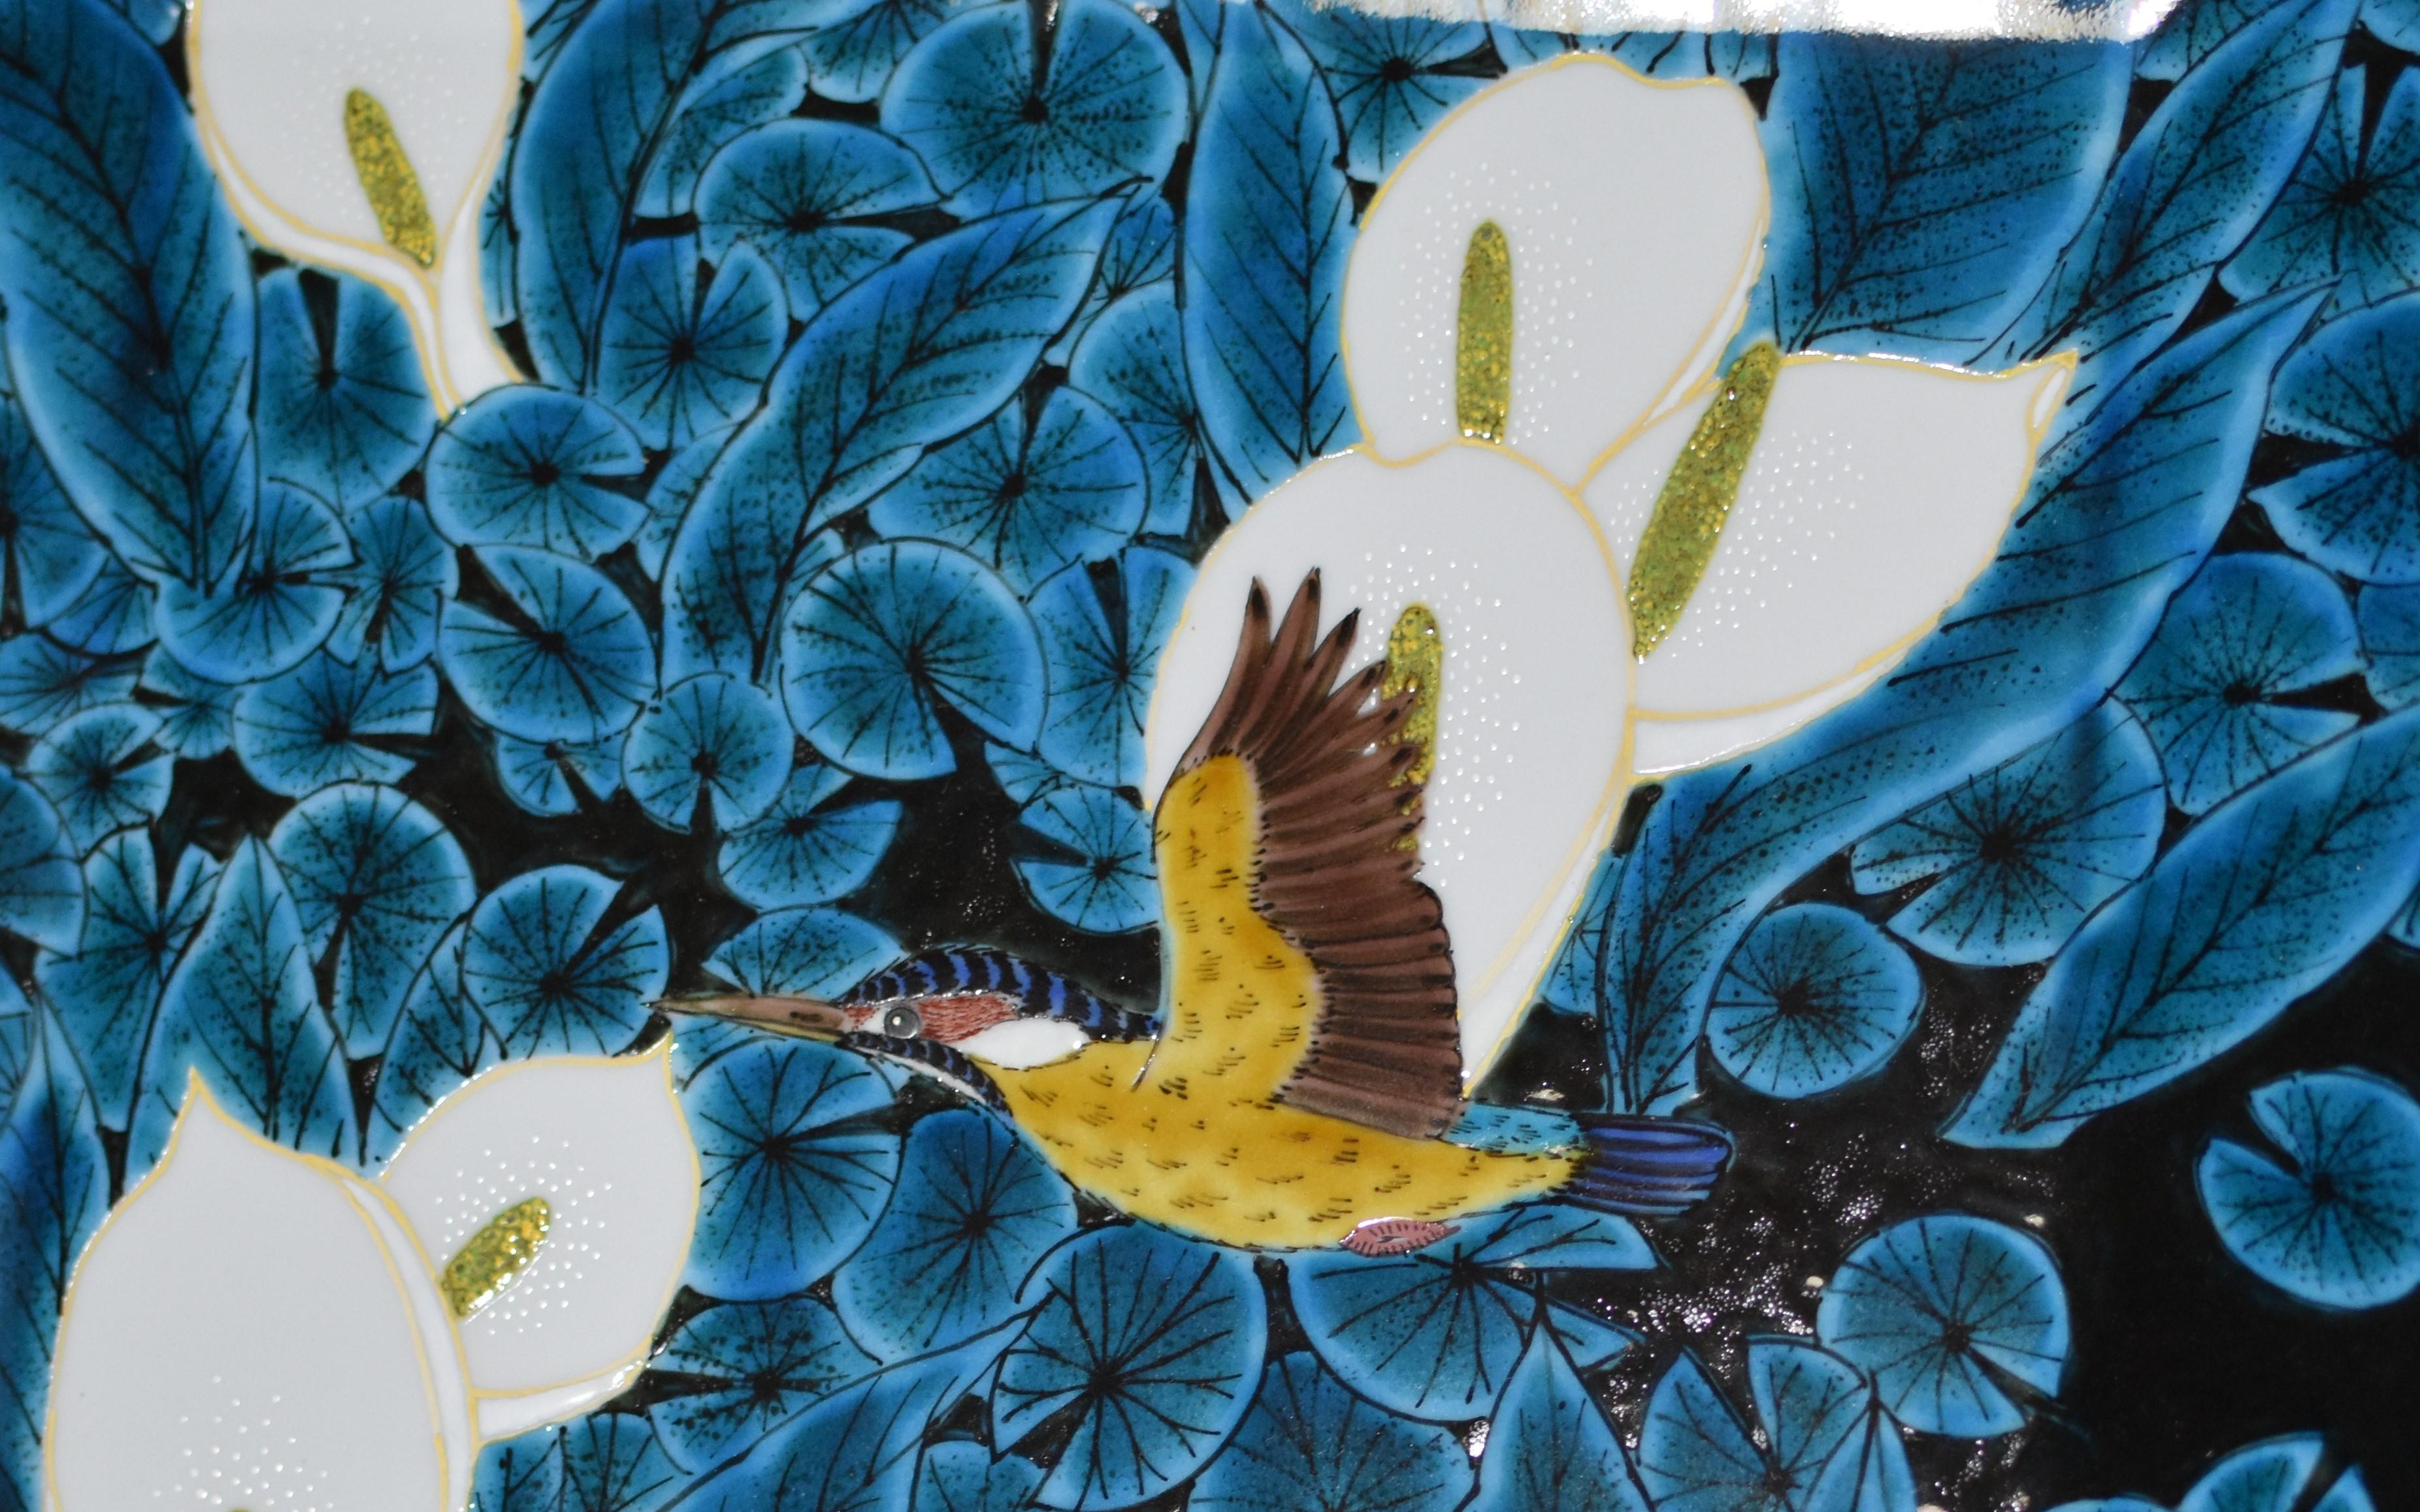 Exceptionnel chargeur contemporain en porcelaine décorative japonaise, peint à la main en noir et en bleu profond, signature de l'artiste, sur un superbe corps de porcelaine de forme carrée. Il s'agit d'un chef-d'œuvre signé par un maître